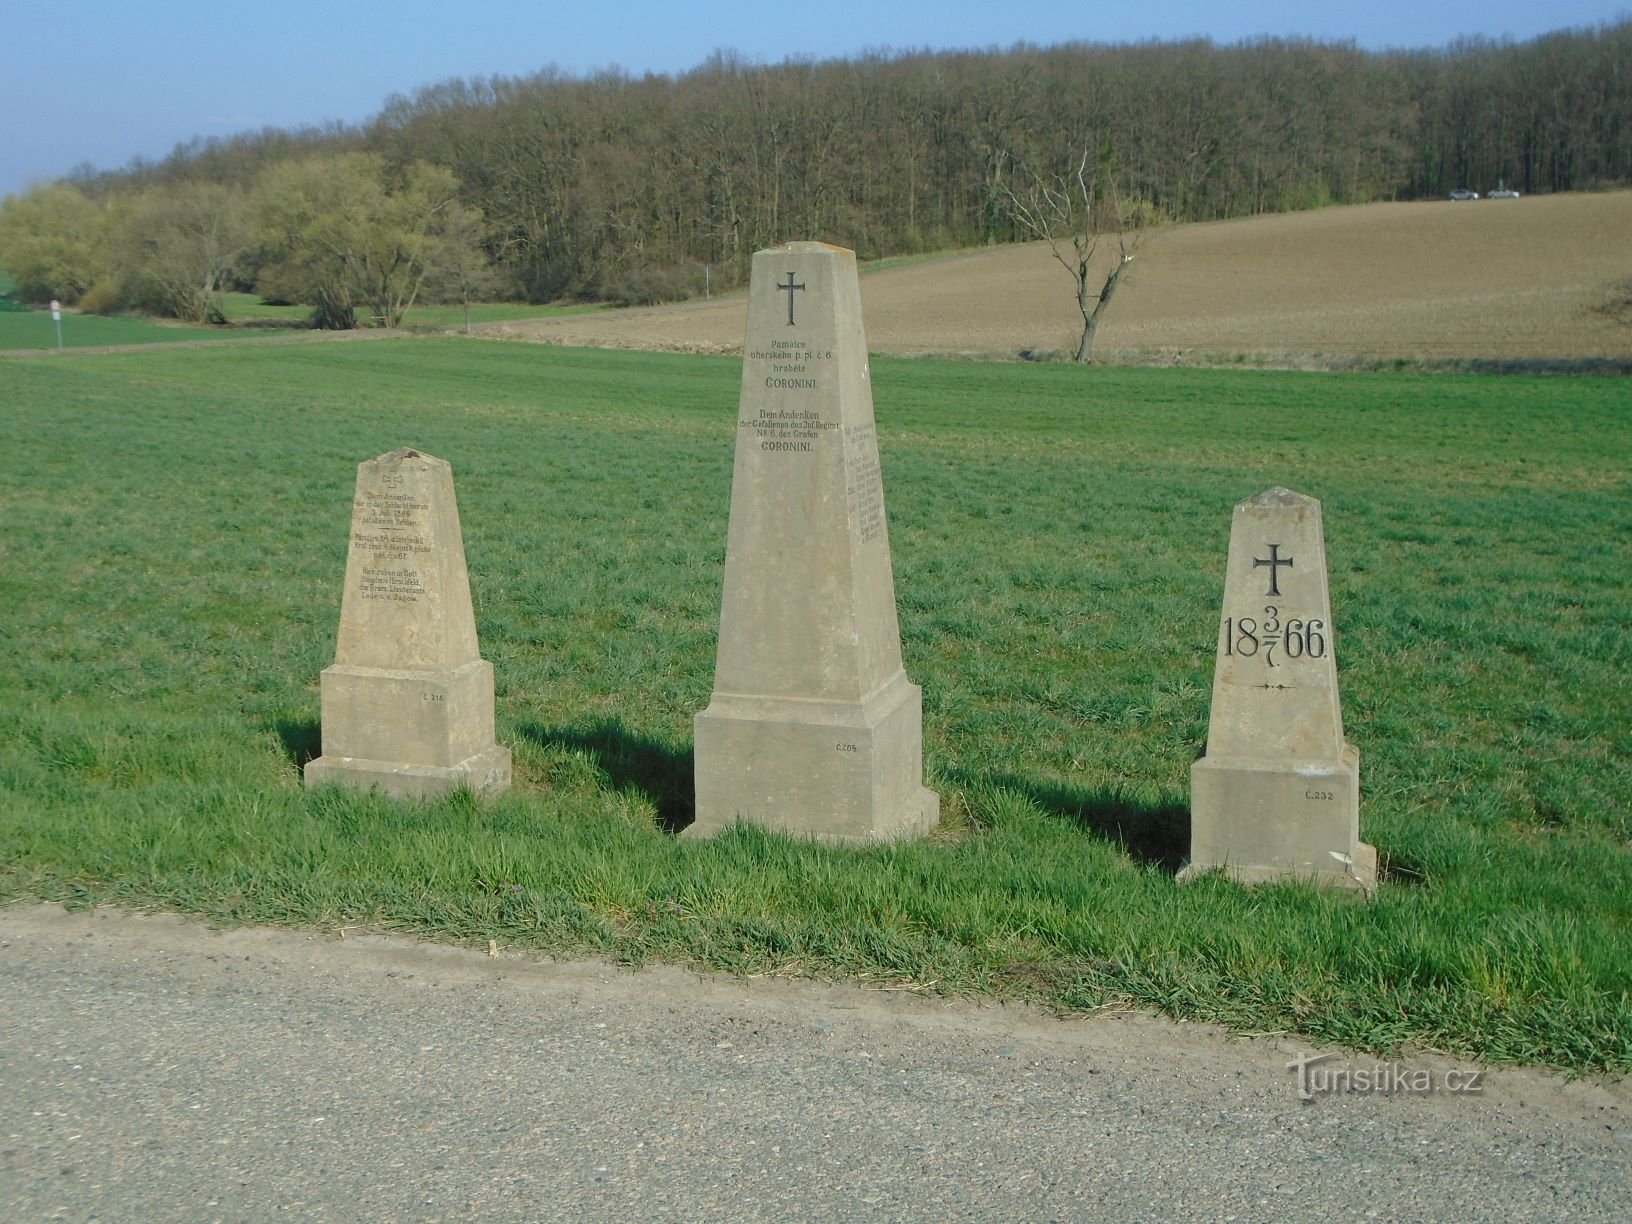 Taistelun muistomerkit vuodelta 1866 tien varrella (Čistěves, 7.4.2019)